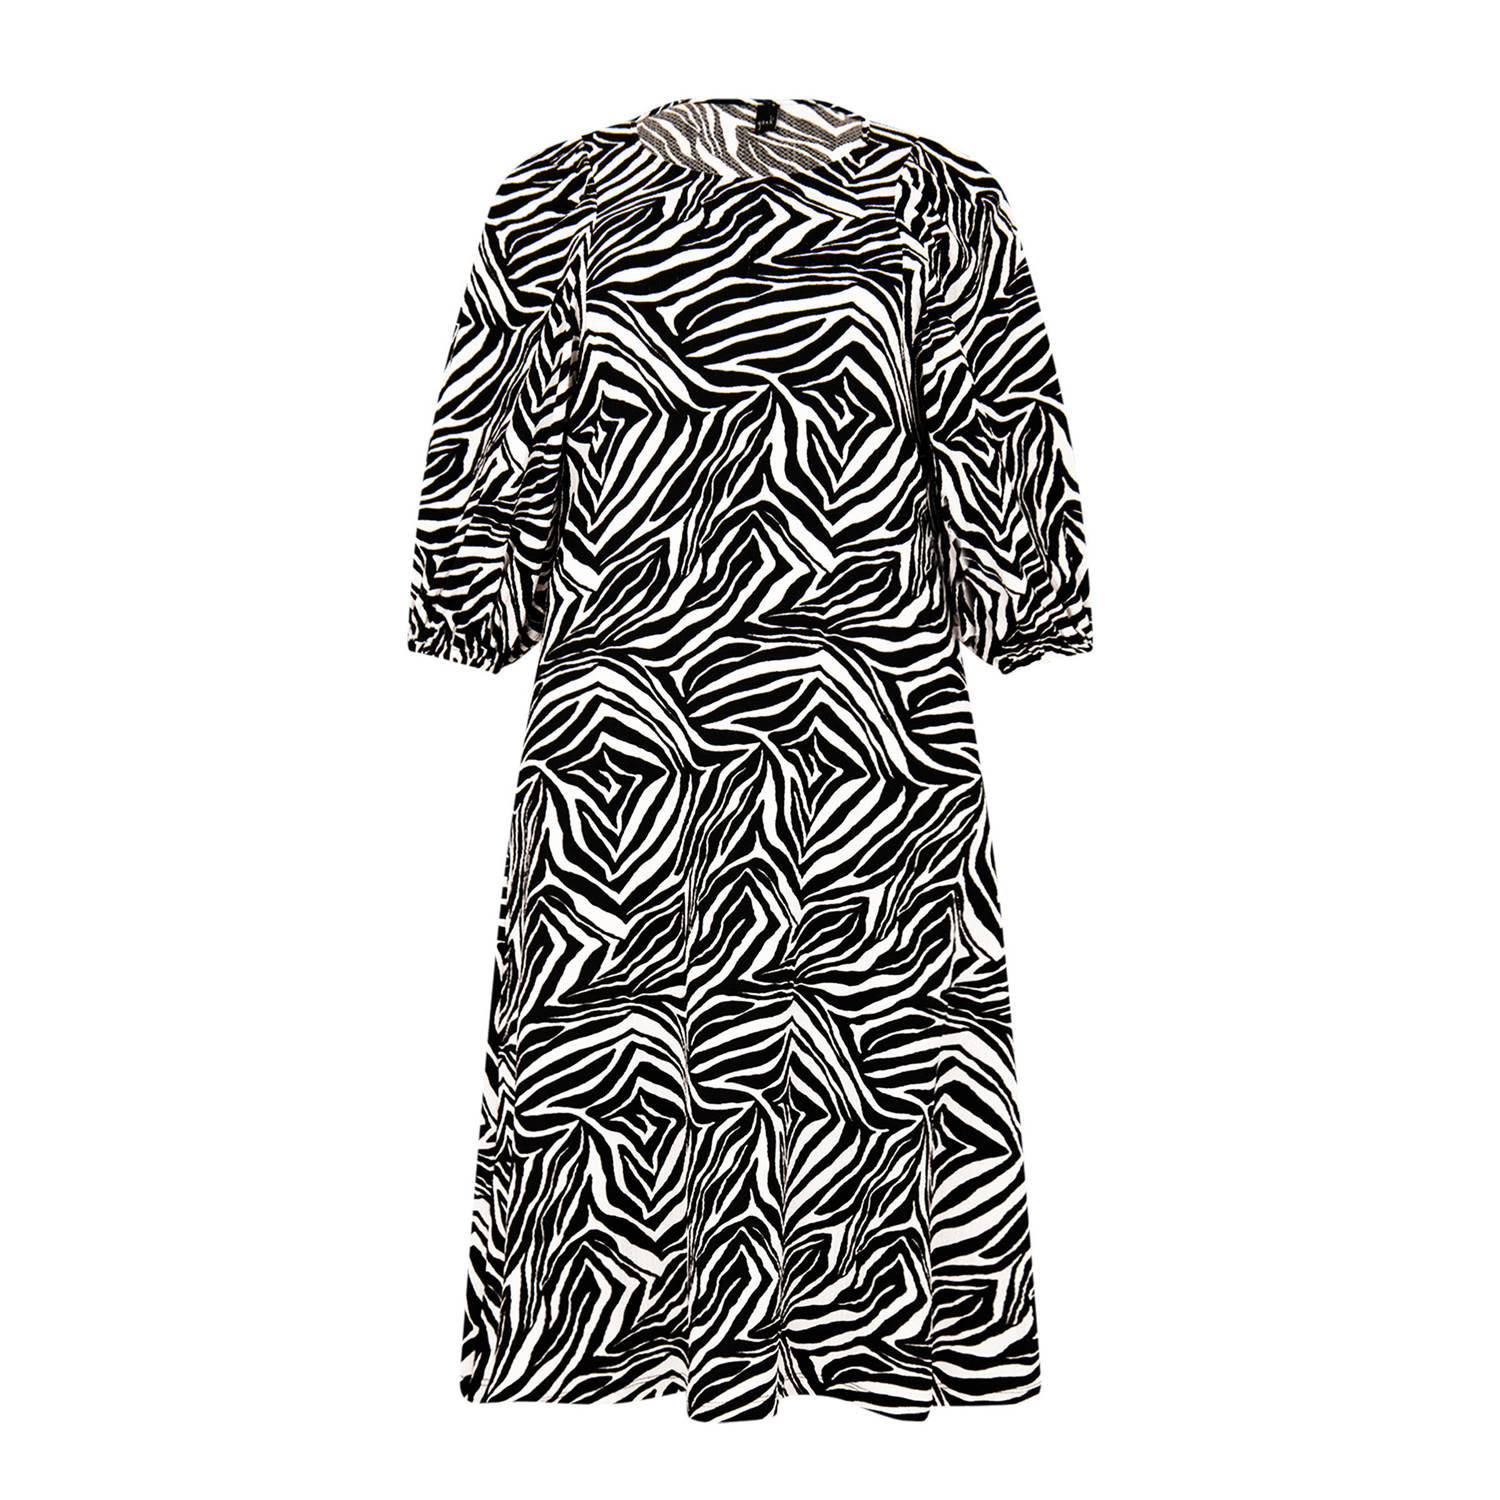 Yoek jurk met zebraprint zwart wit